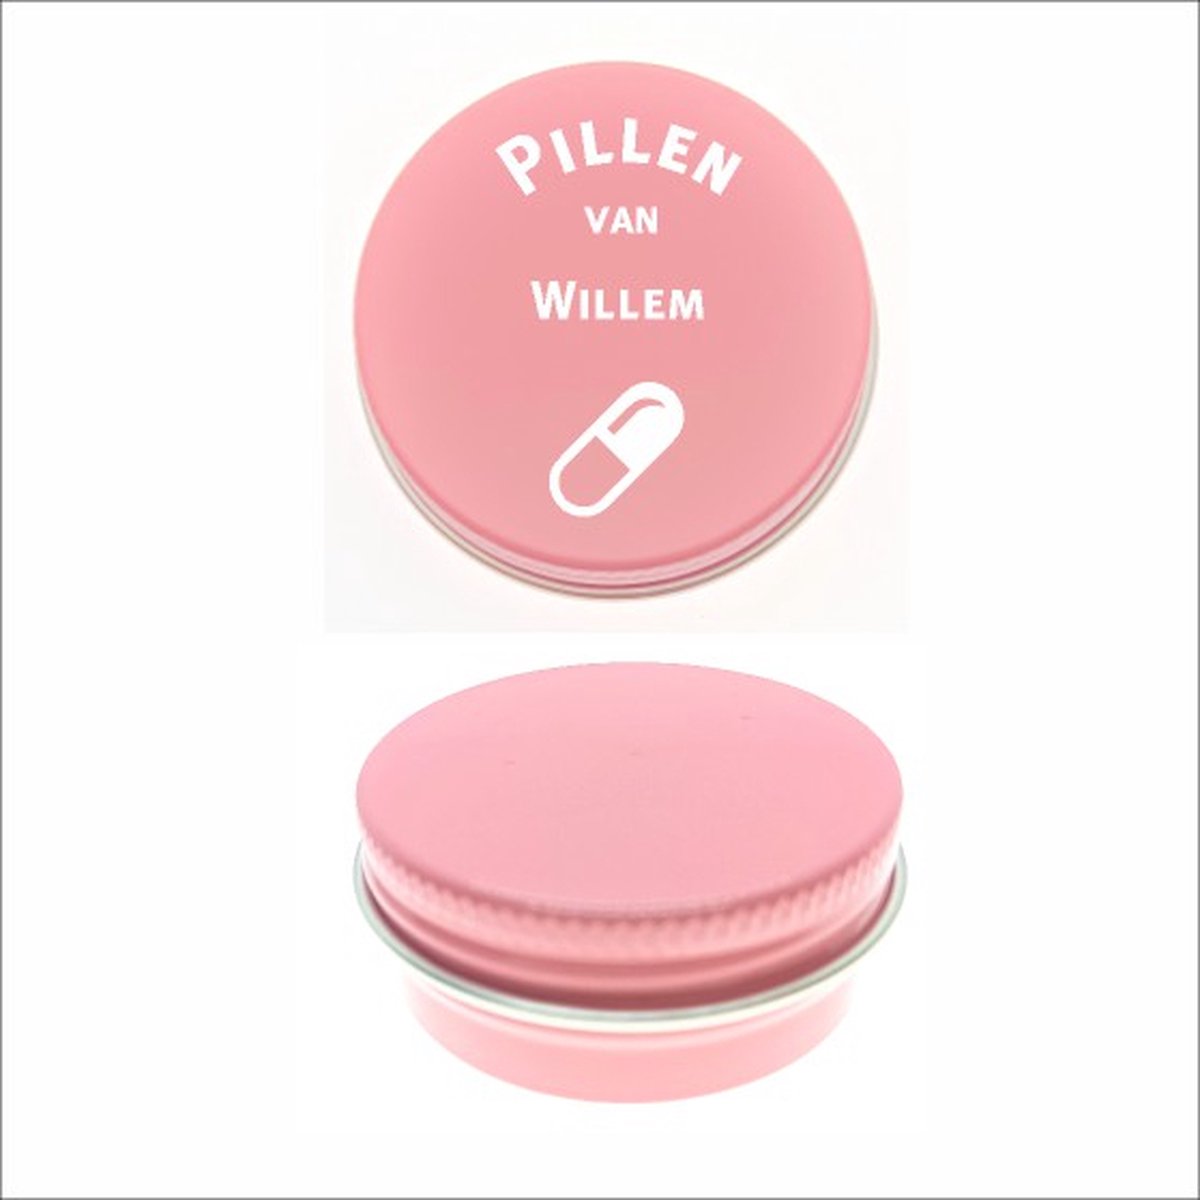 Pillen Blikje Met Naam Gravering - Willem